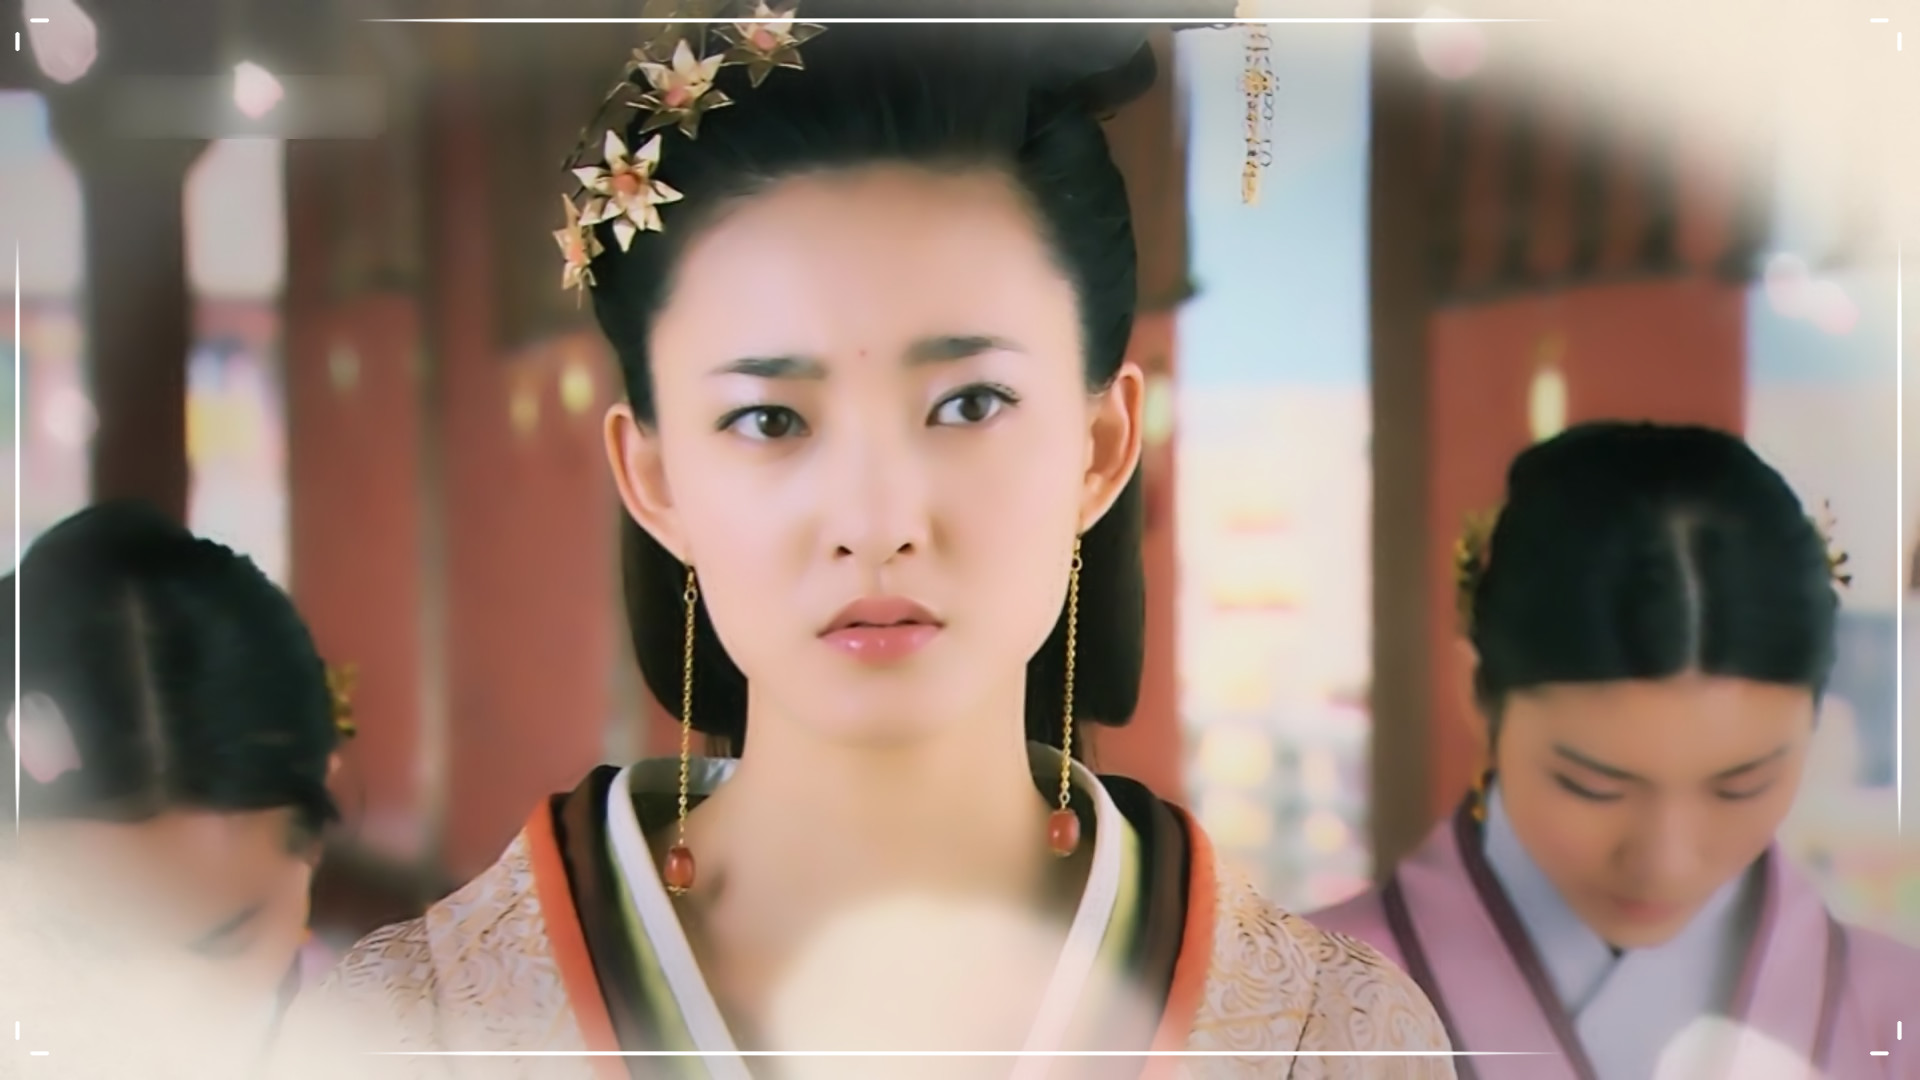 王丽坤,因素颜而出名,那些古装角色也一样美丽!